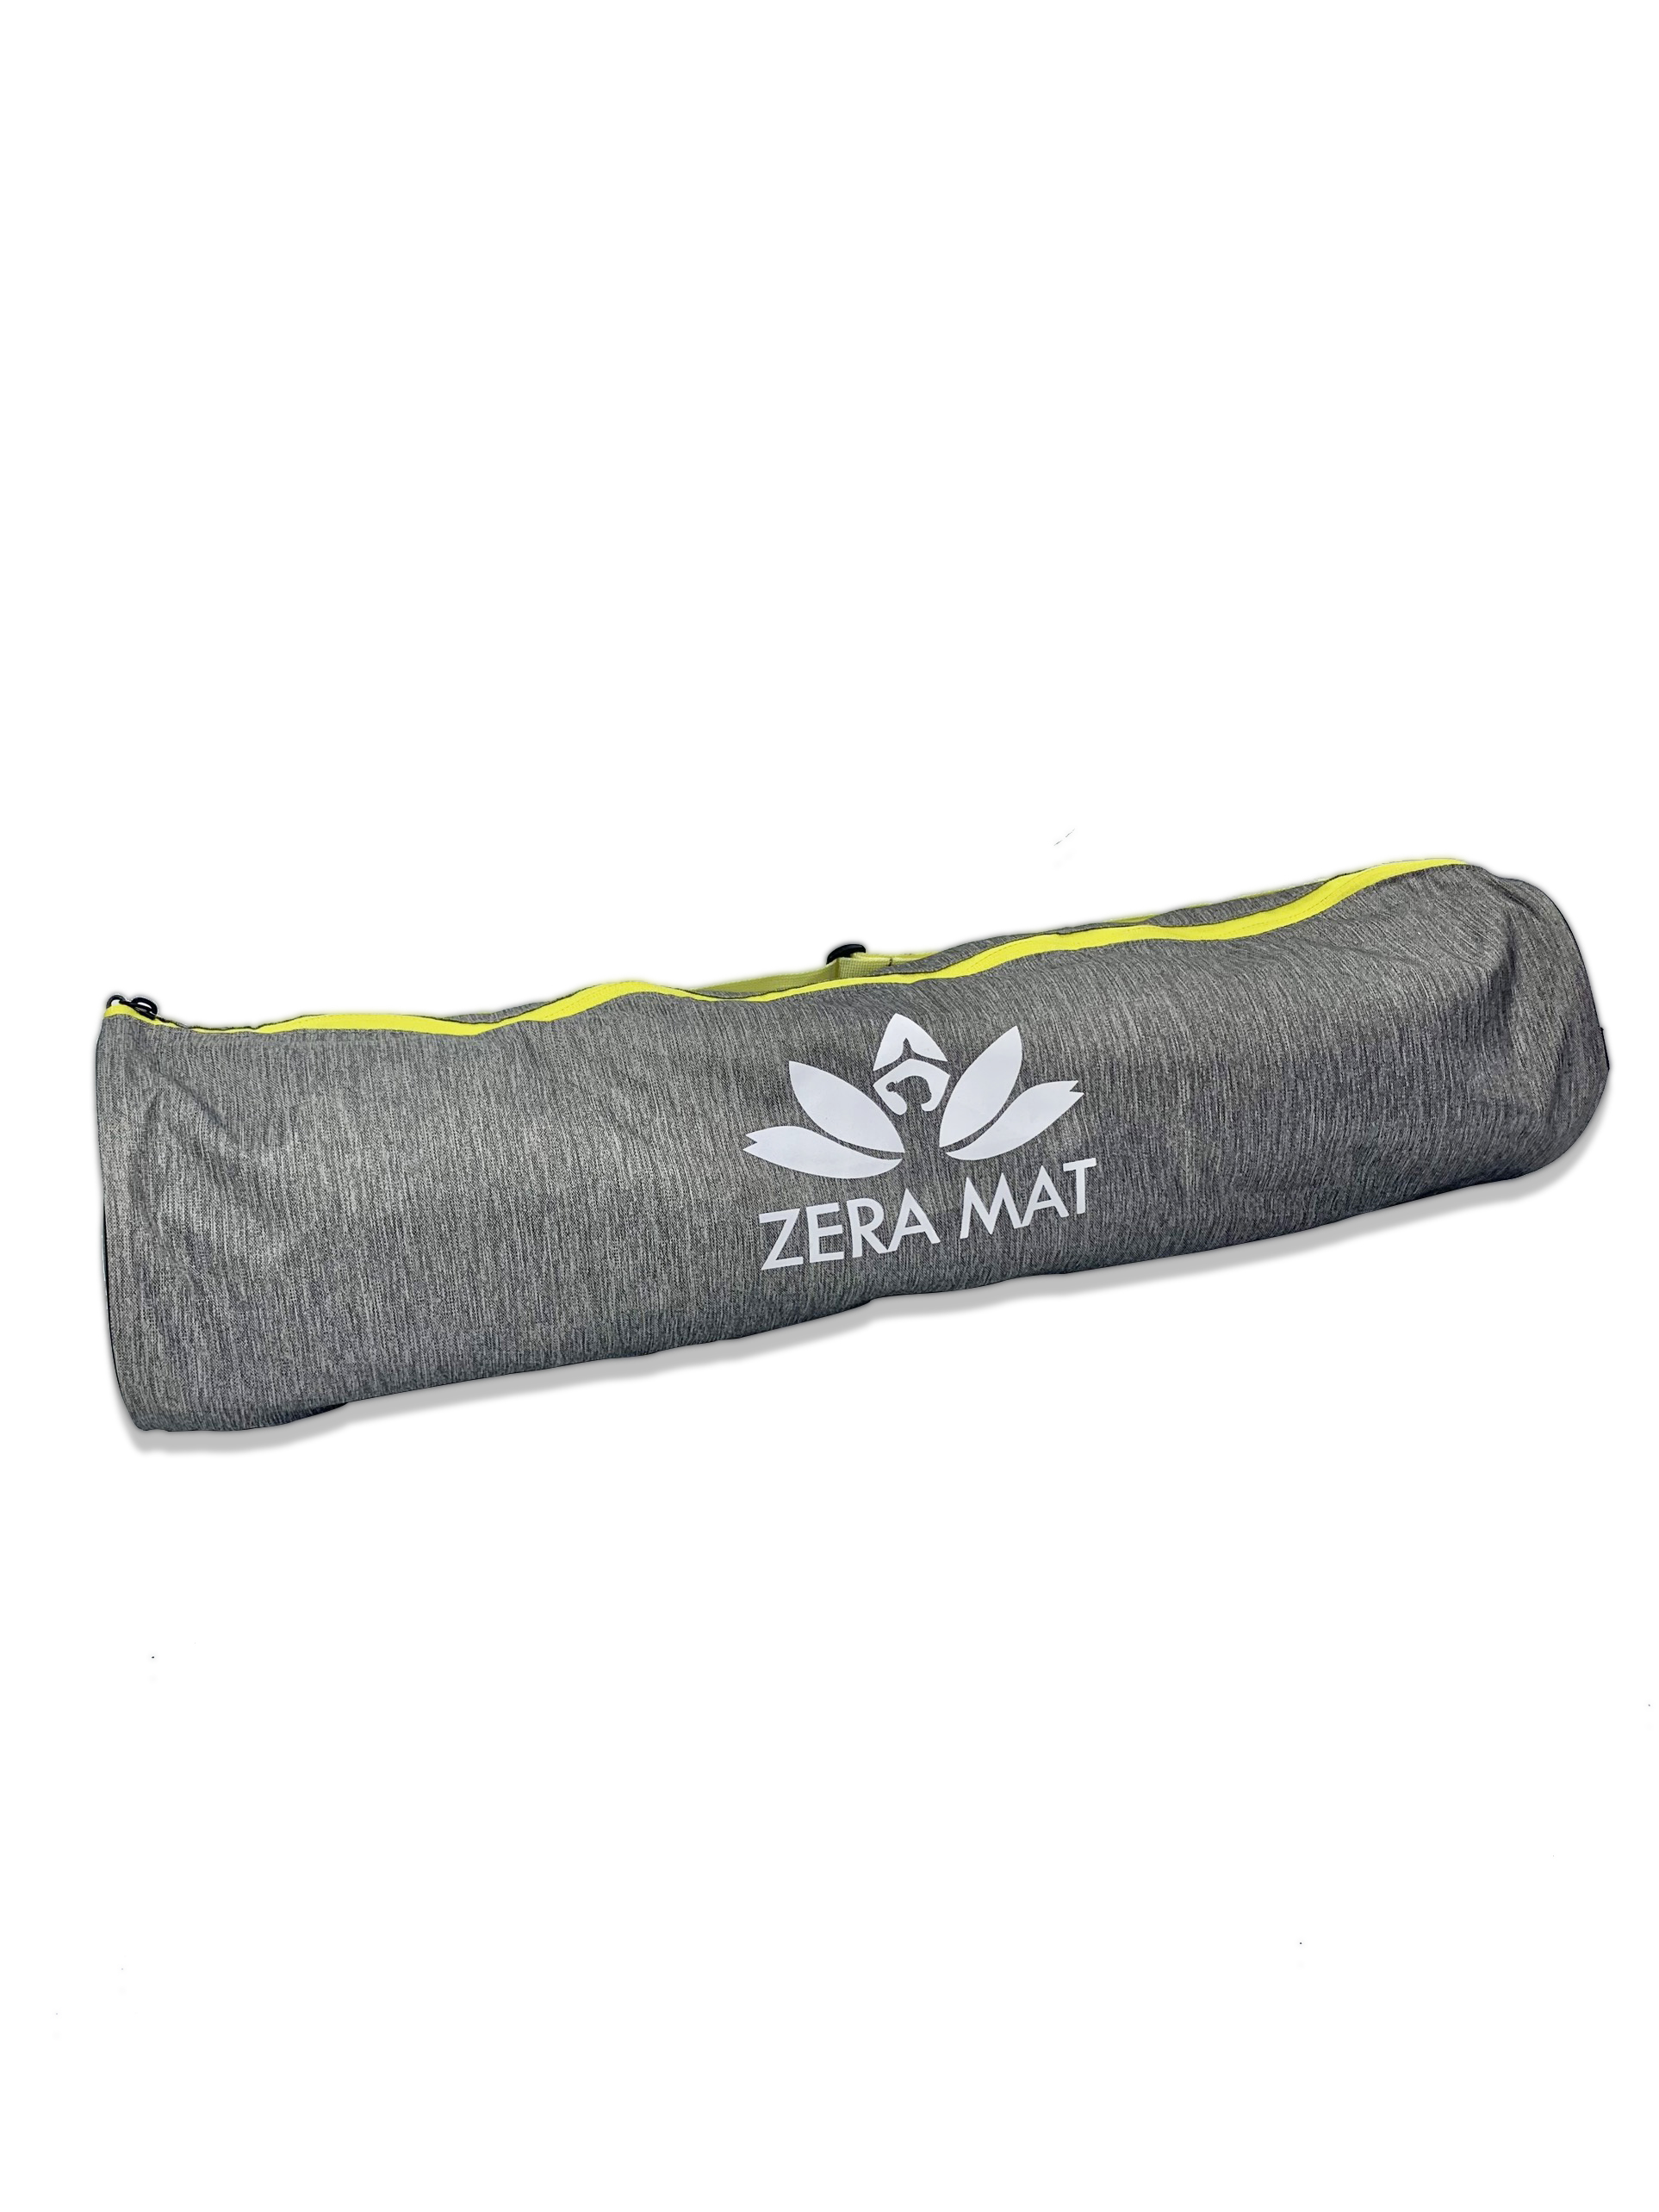 Túi đựng thảm yoga Yesure Relax  cao cấp lót PVC ( giao màu ngẫu nhiên) + tặng dây buộc thảm yoga